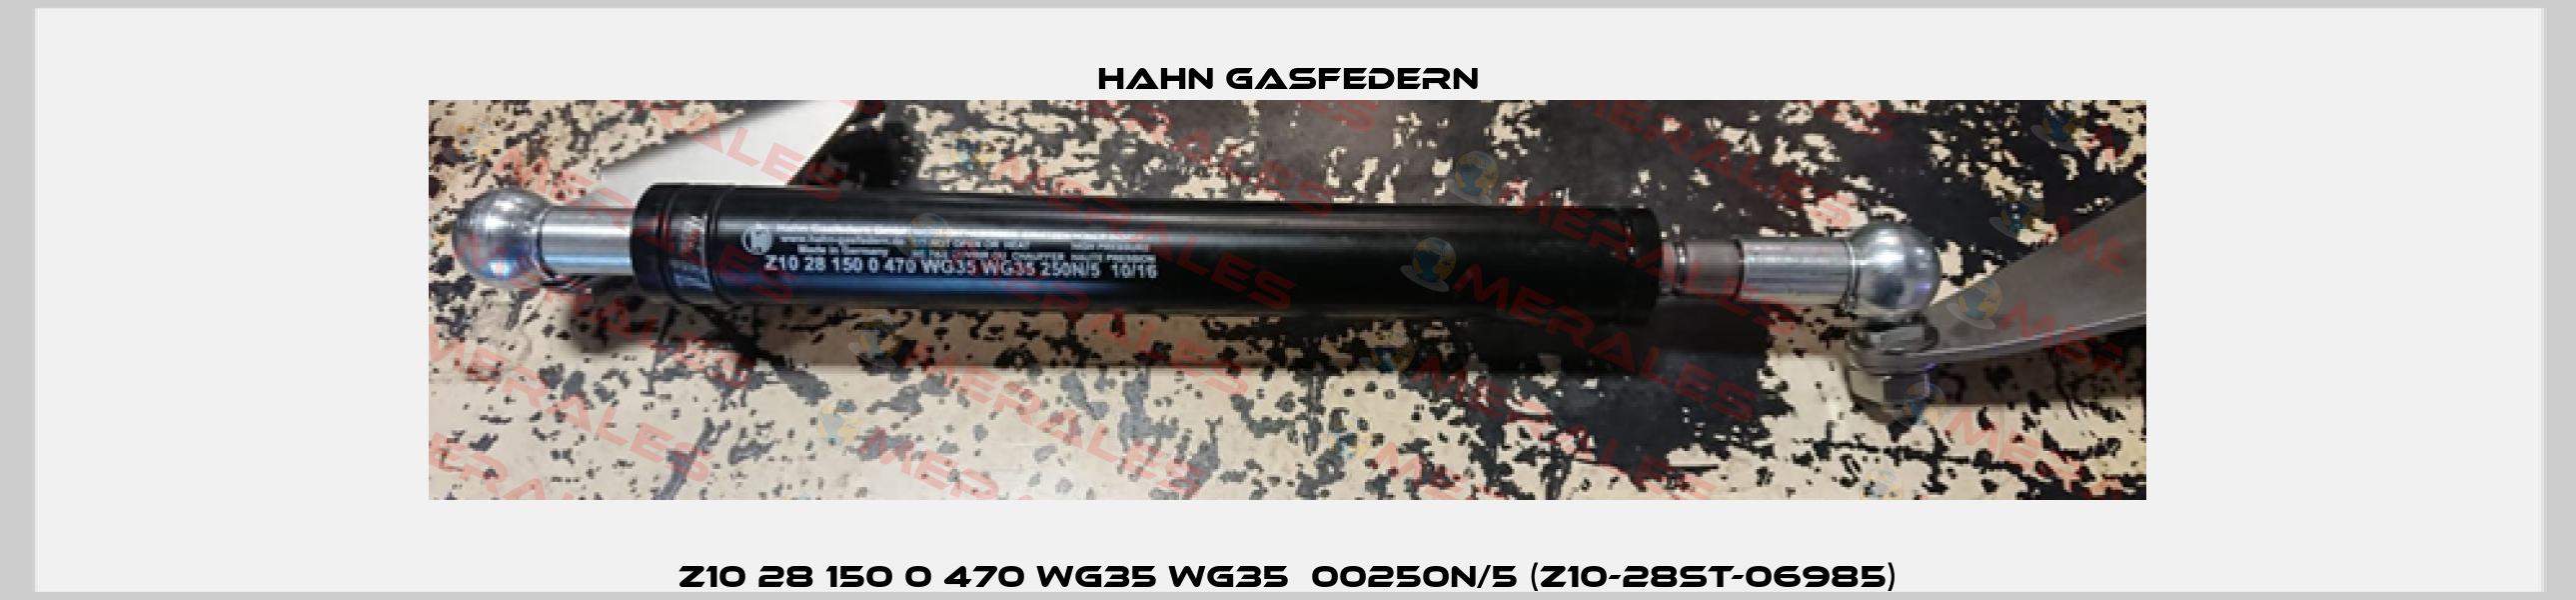 Z10 28 150 0 470 WG35 WG35  00250N/5 (Z10-28ST-06985) Hahn Gasfedern